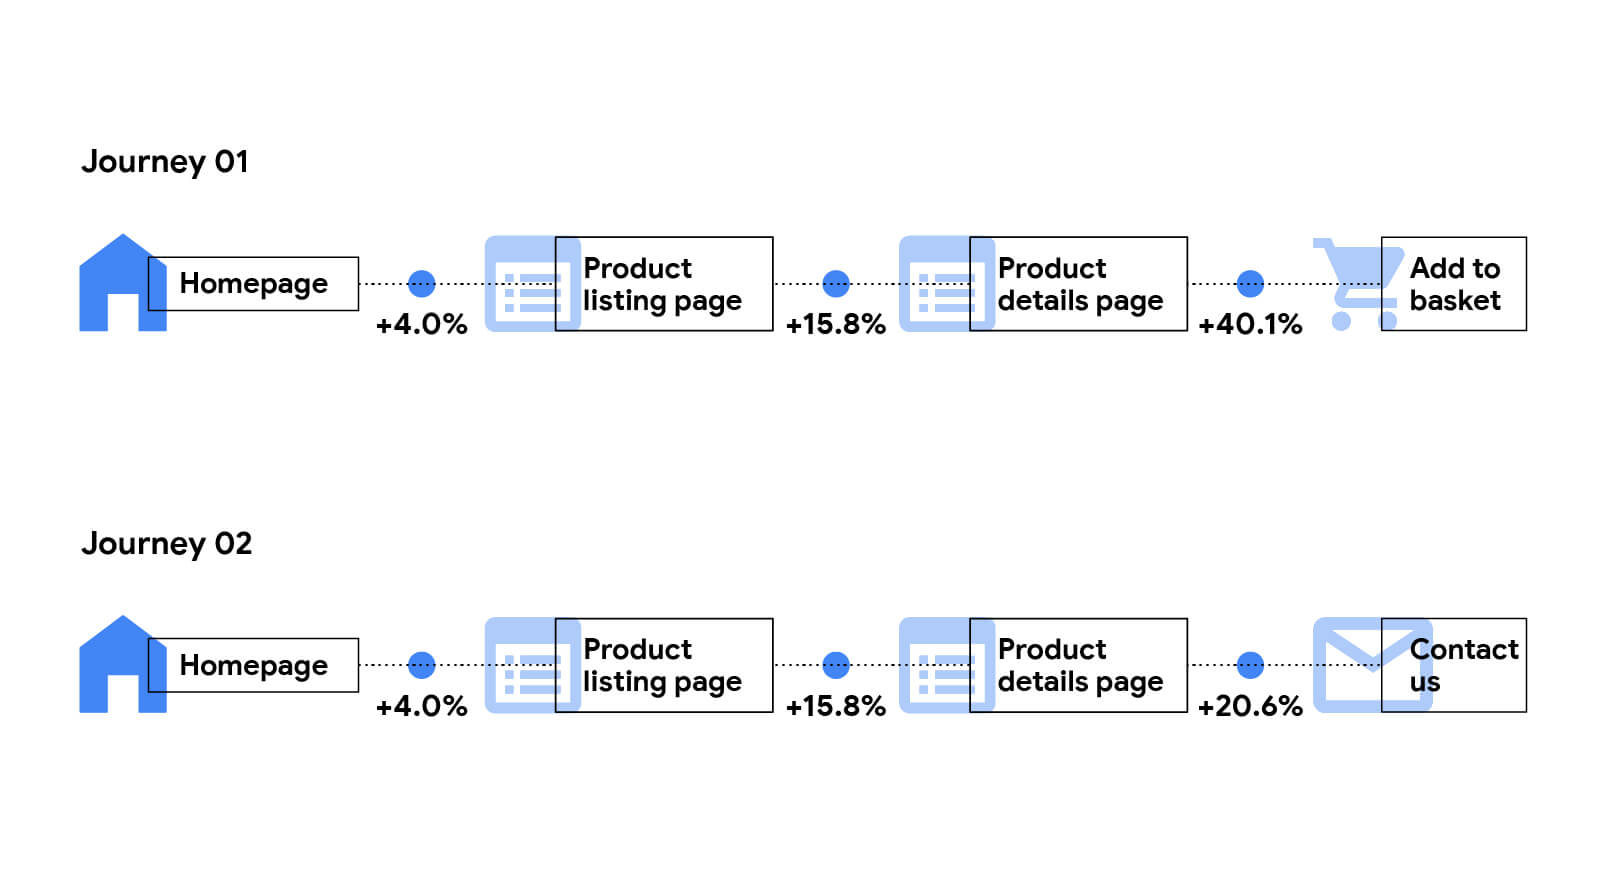 詳細說明豪華網站的進度率如何影響。首頁產品資訊頁面：4.0%。「產品資訊」頁面的「產品詳細資料」頁面：15.8%。要加入購物車的產品詳細資料頁面：40。